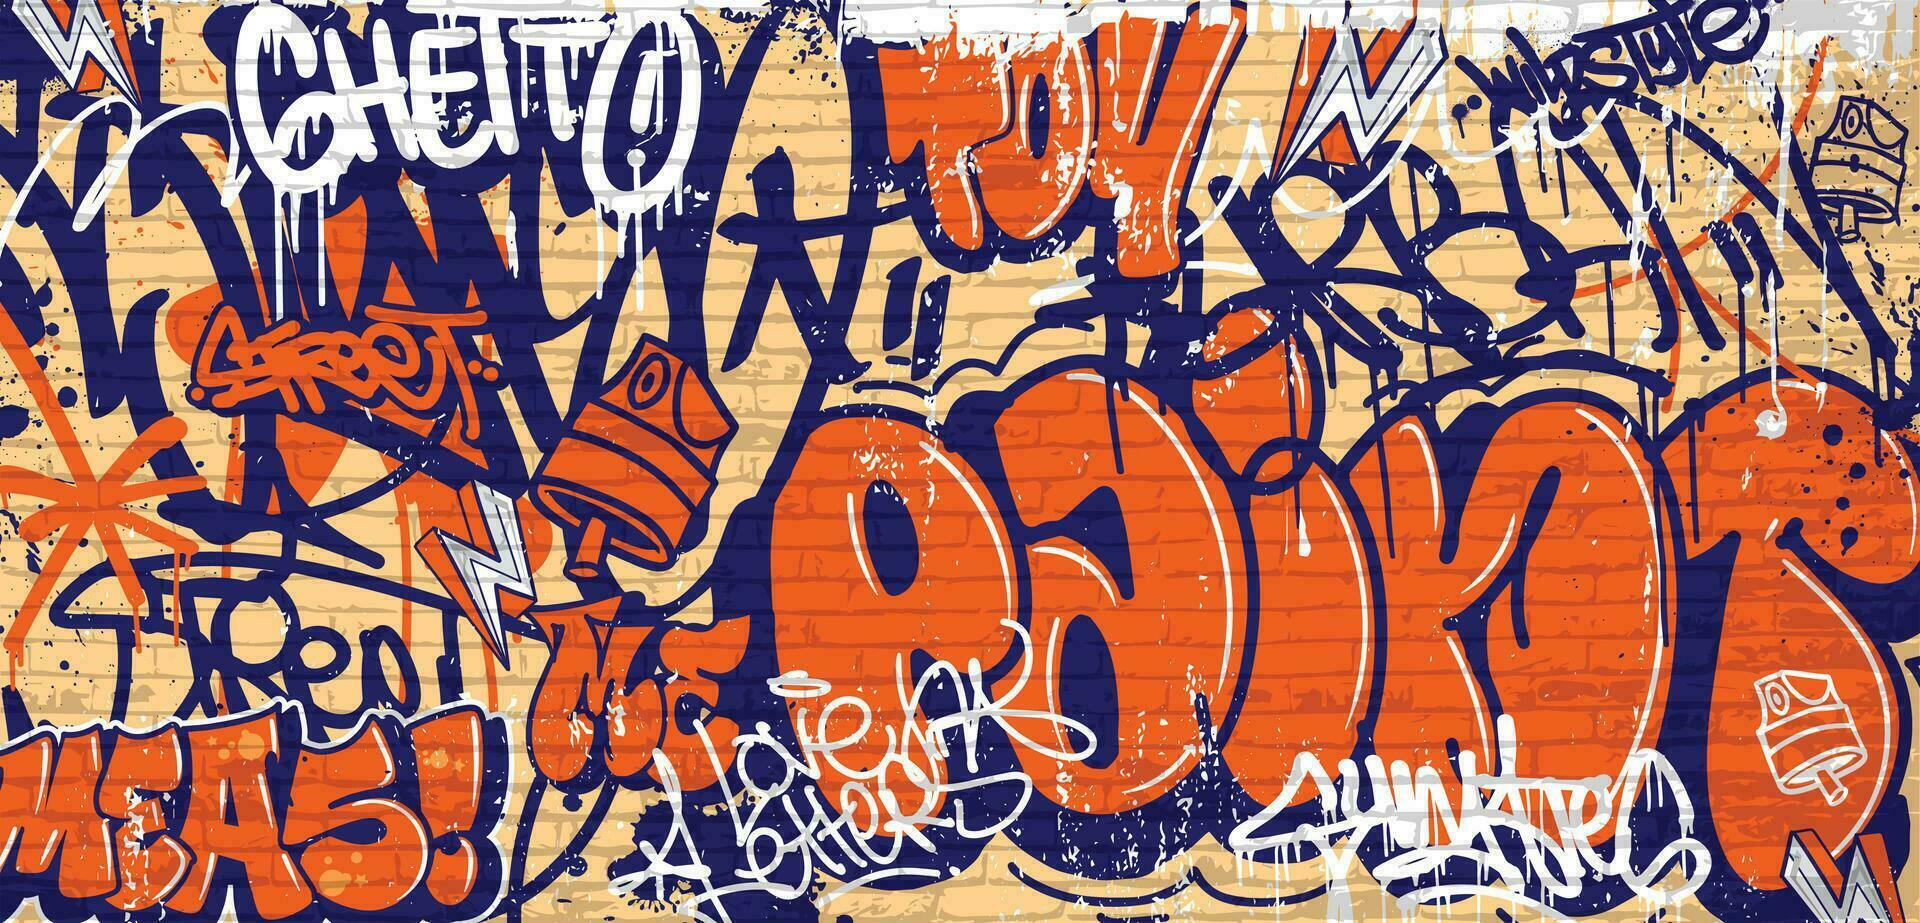 graffiti bakgrund med Spy, klottra och märkning i vibrerande färger. abstrakt graffiti i vektor illustrationer.